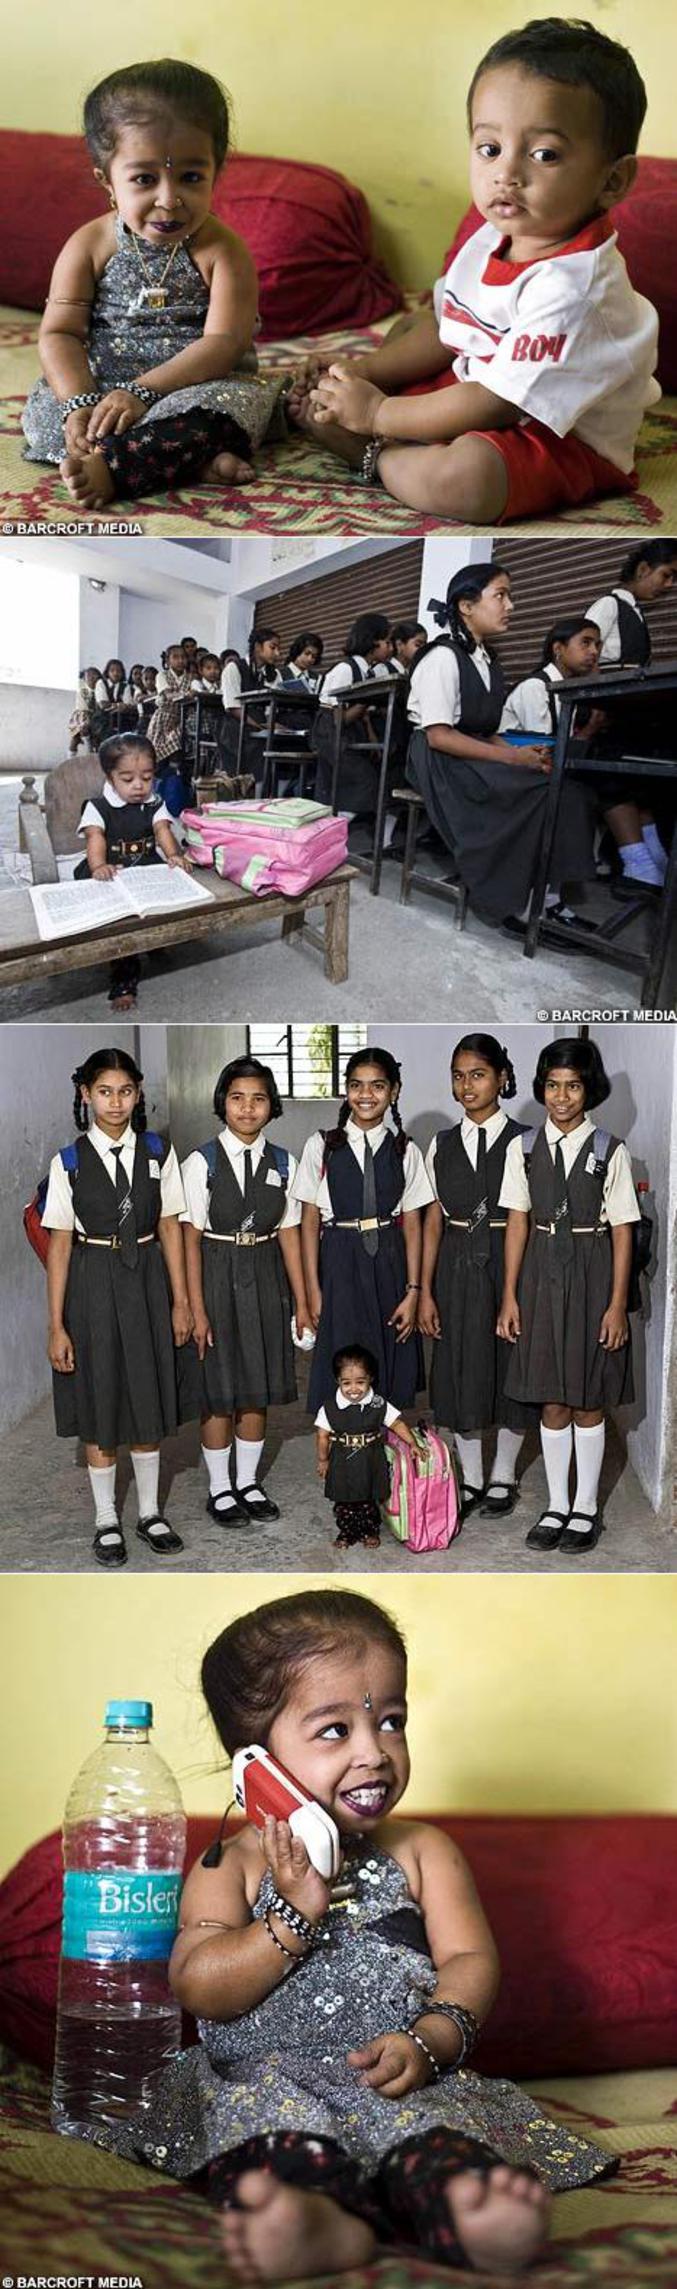 Une indienne de 14 ans pesant 5 kilos et mesurant 58 cm détient le record de la plus petite personne du monde.